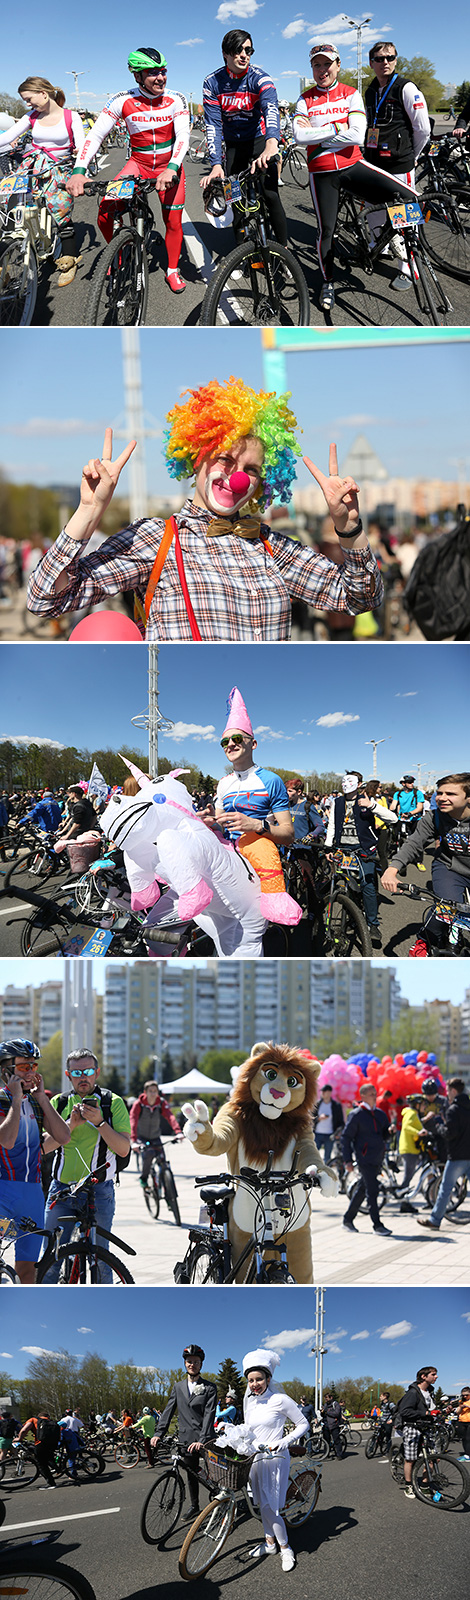 International VIVA, Bike carnival-parade in Minsk 